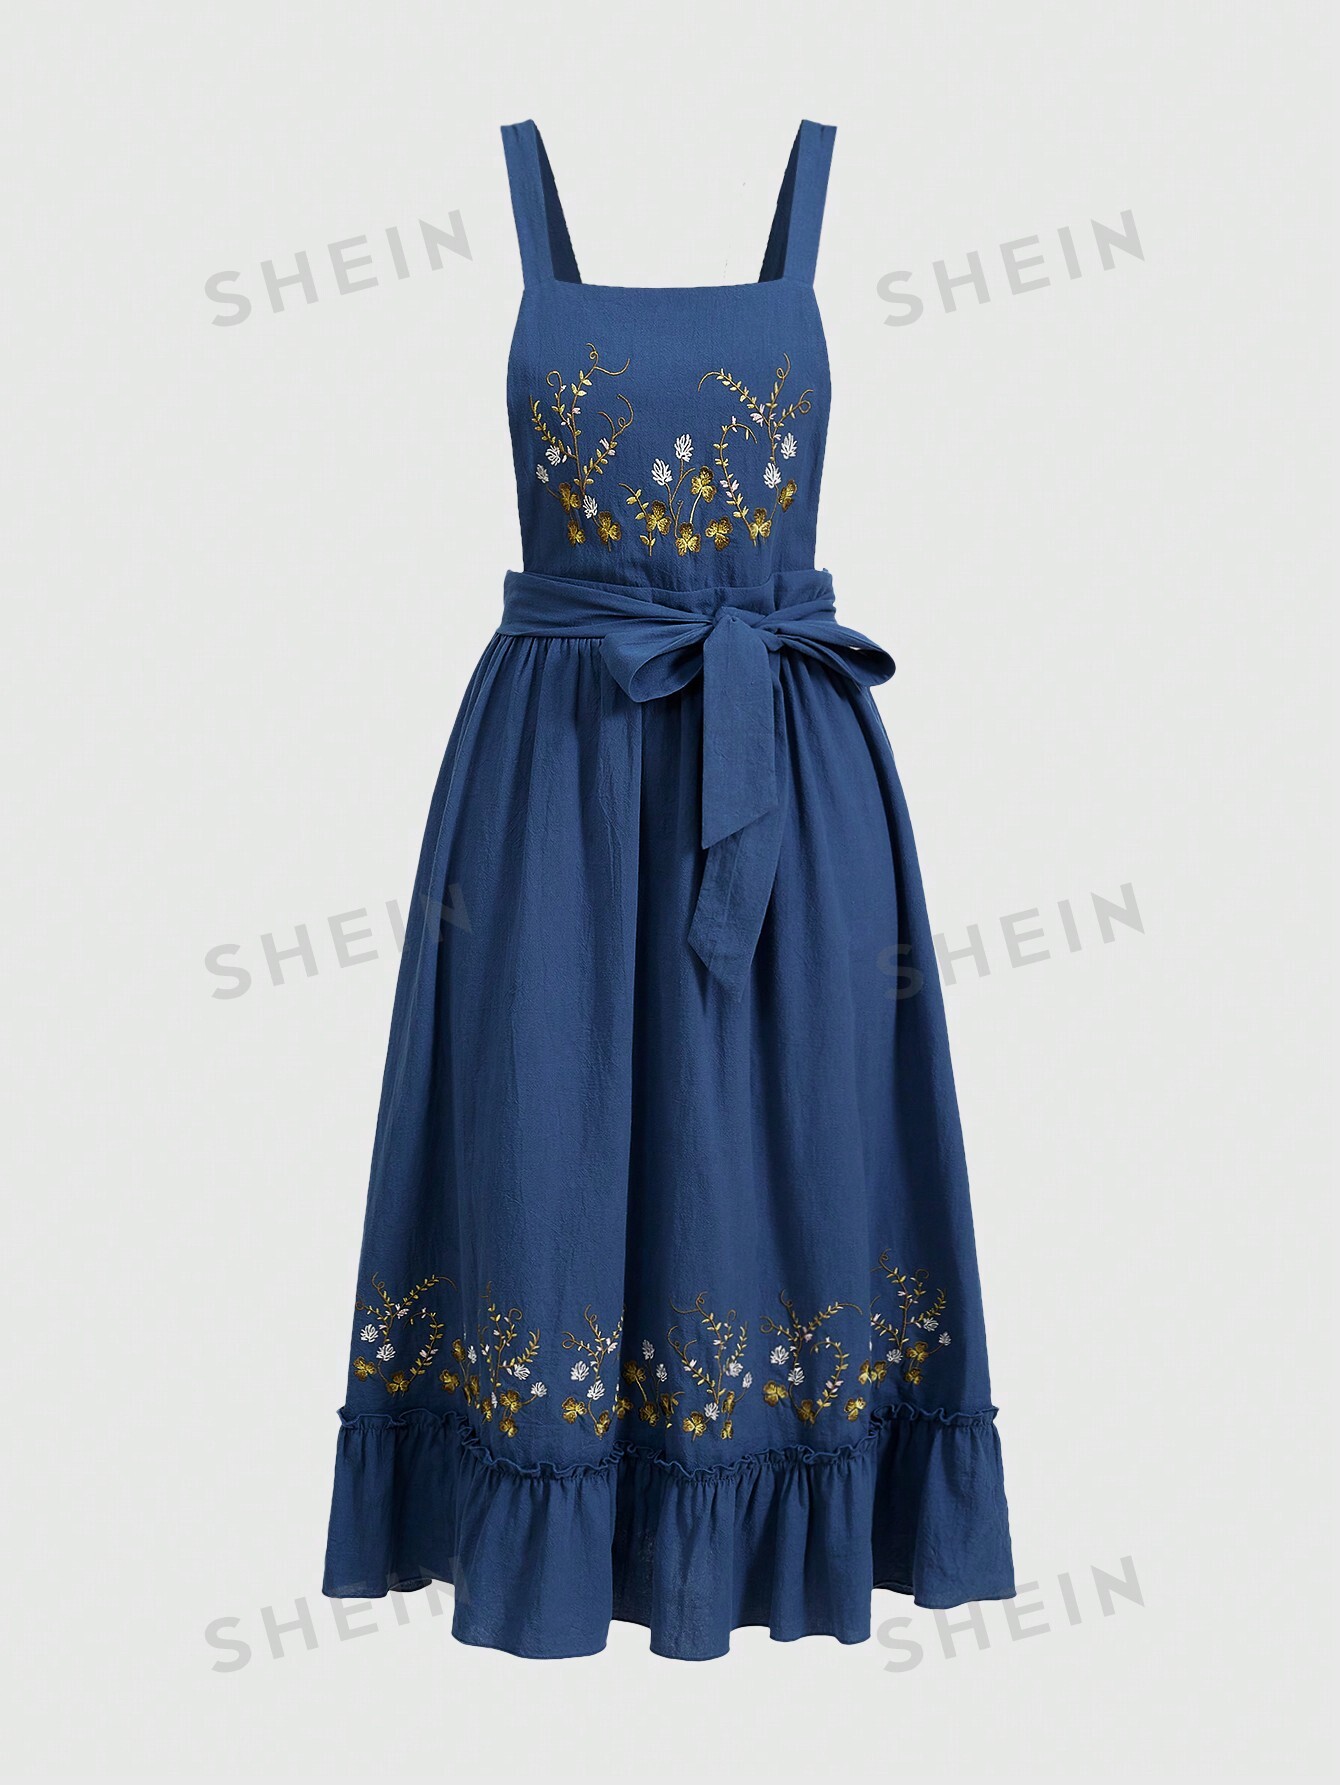 ROMWE Fairycore Женское платье на тонких бретельках с растительной вышивкой, синий romwe fairycore женское платье на тонких бретельках с растительной вышивкой абрикос